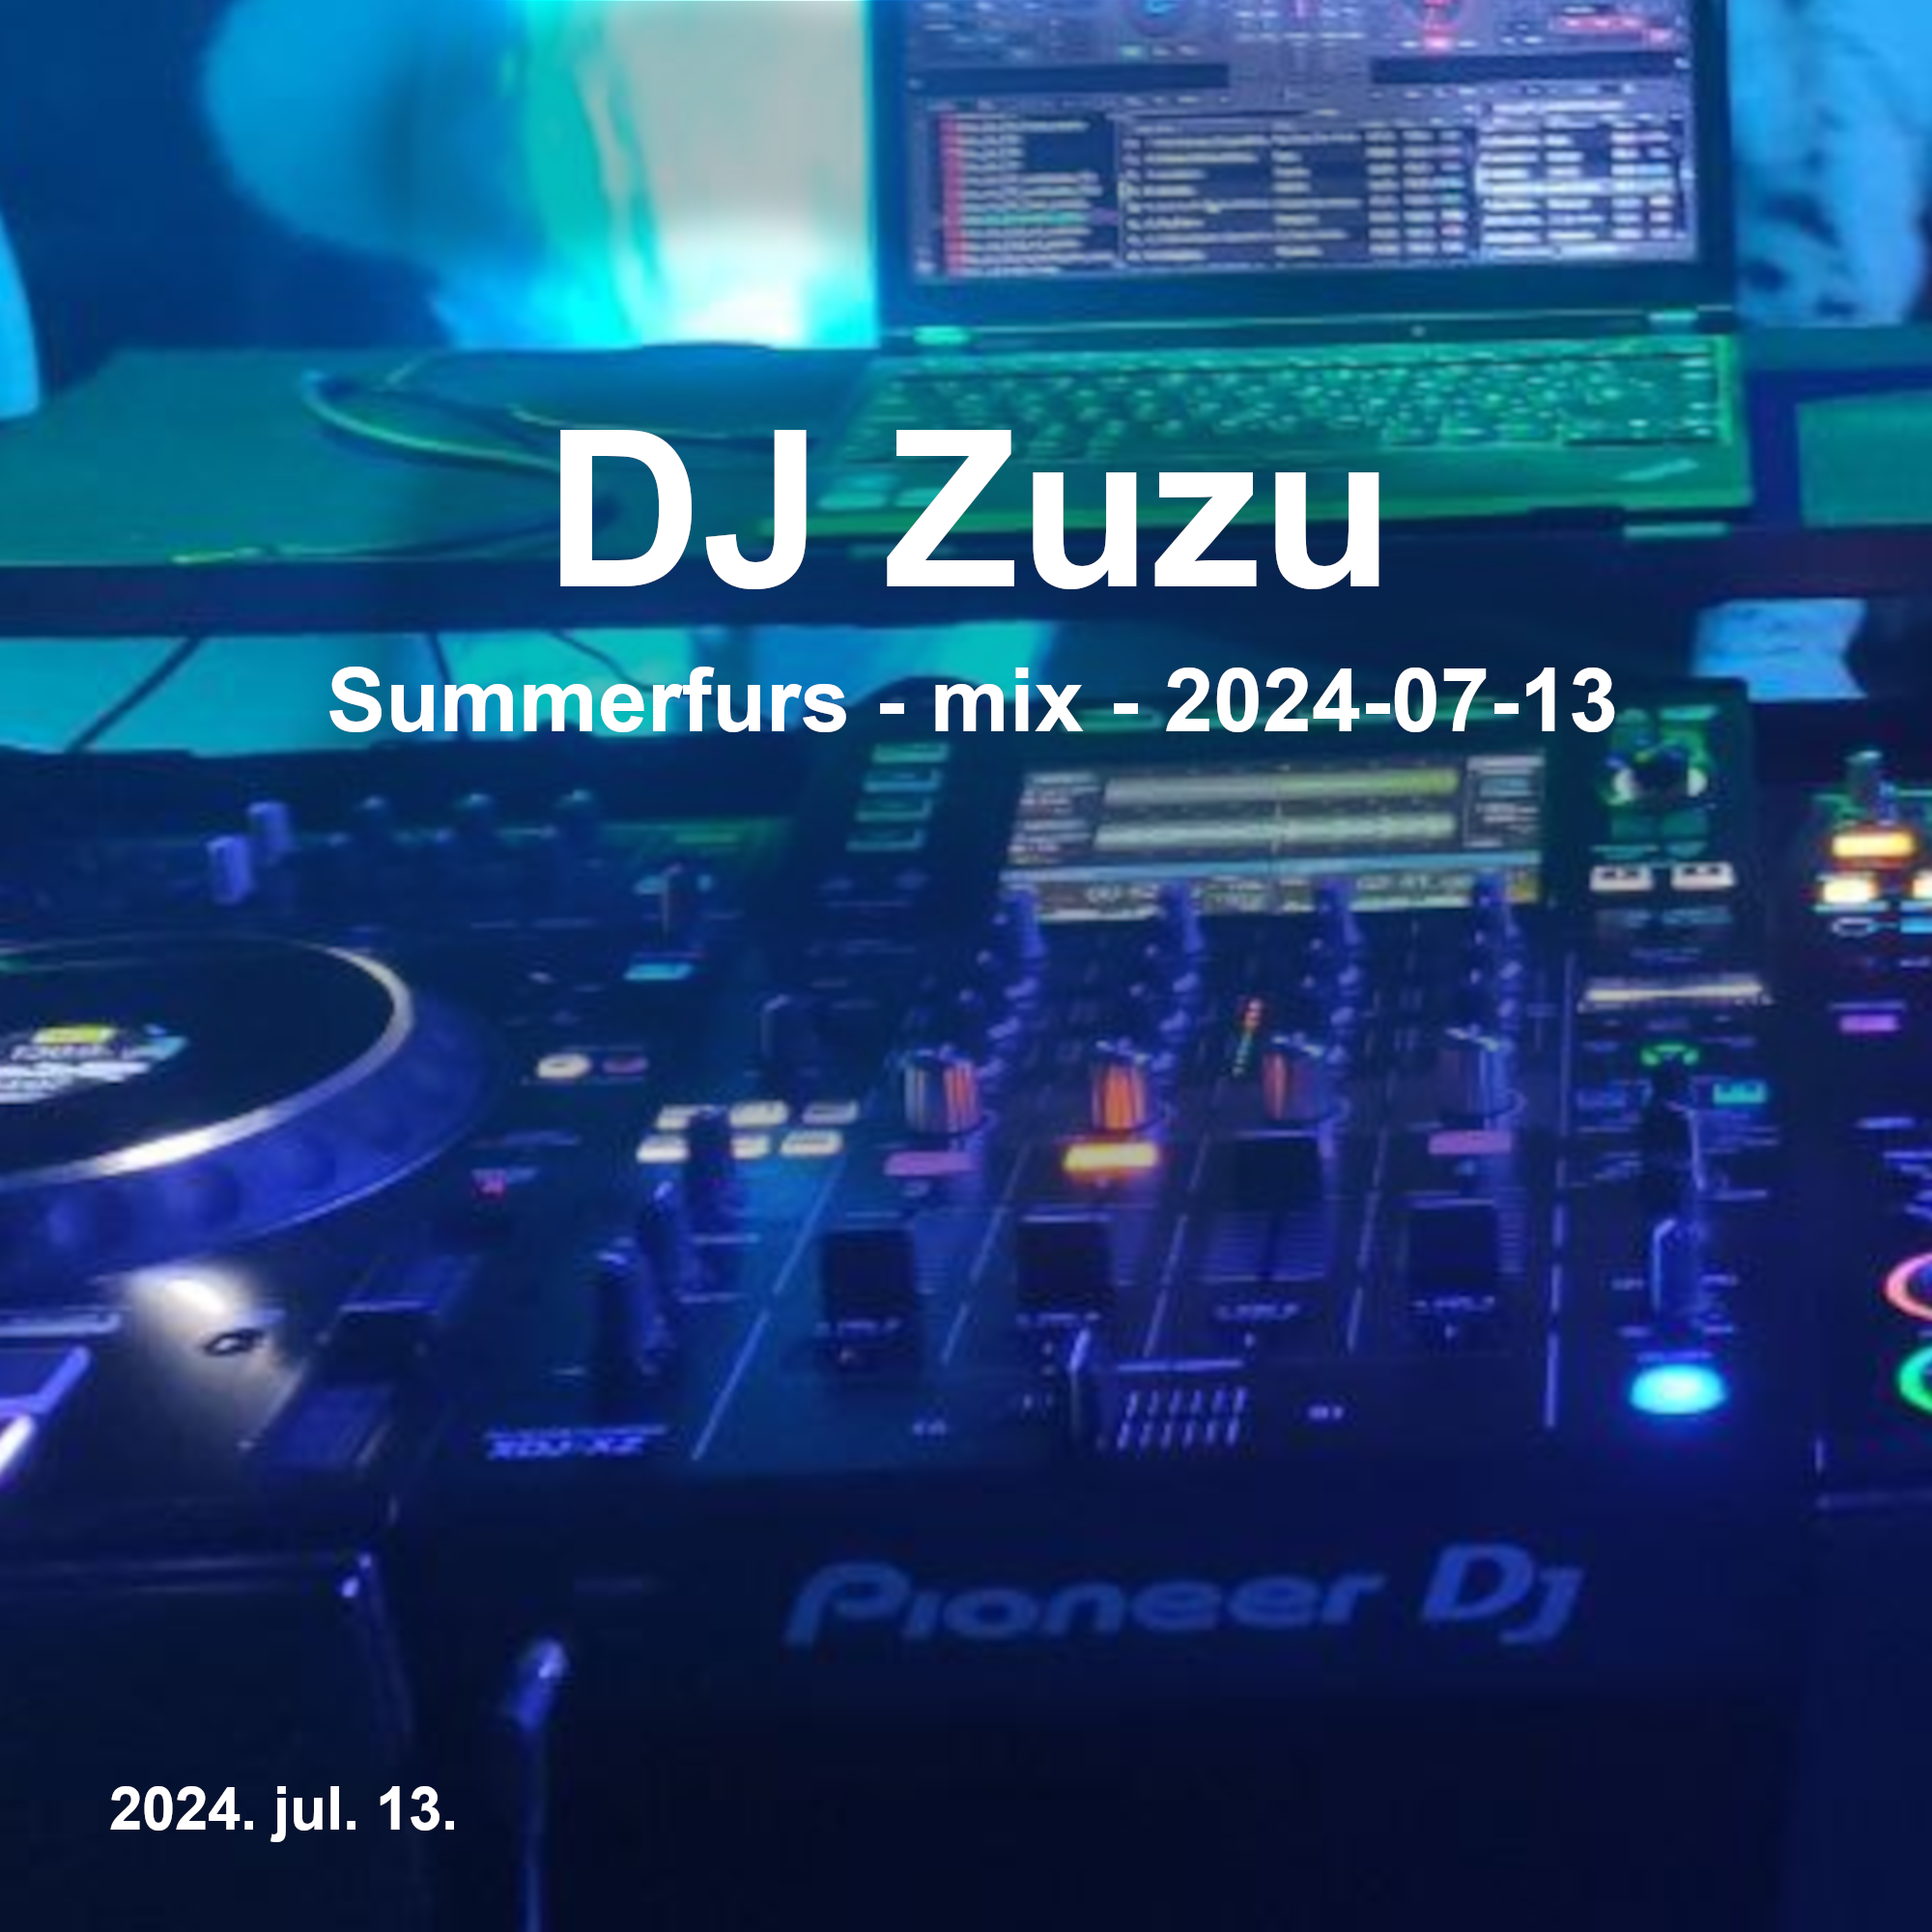 Dj Zuzu Summerfurs mix event flyer 20240713